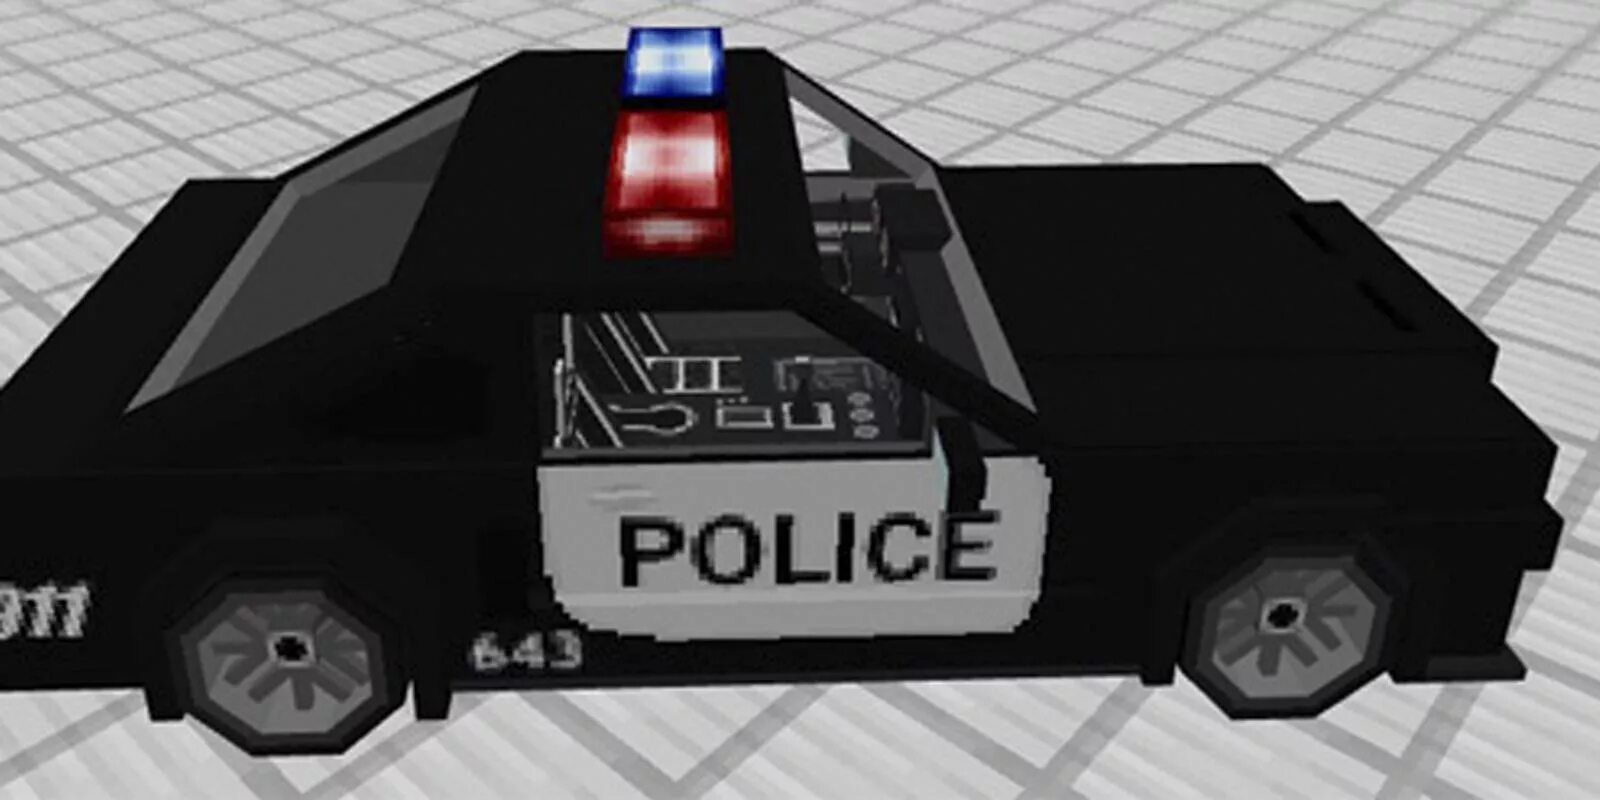 Машины полиции майнкрафт. Minecraft Полицейская машина. Полицейский автомобиль в МАЙНКРАФТЕ. Полицейская машина майнкрафт постройка. Майнкрафт мод на полицейскую машину.